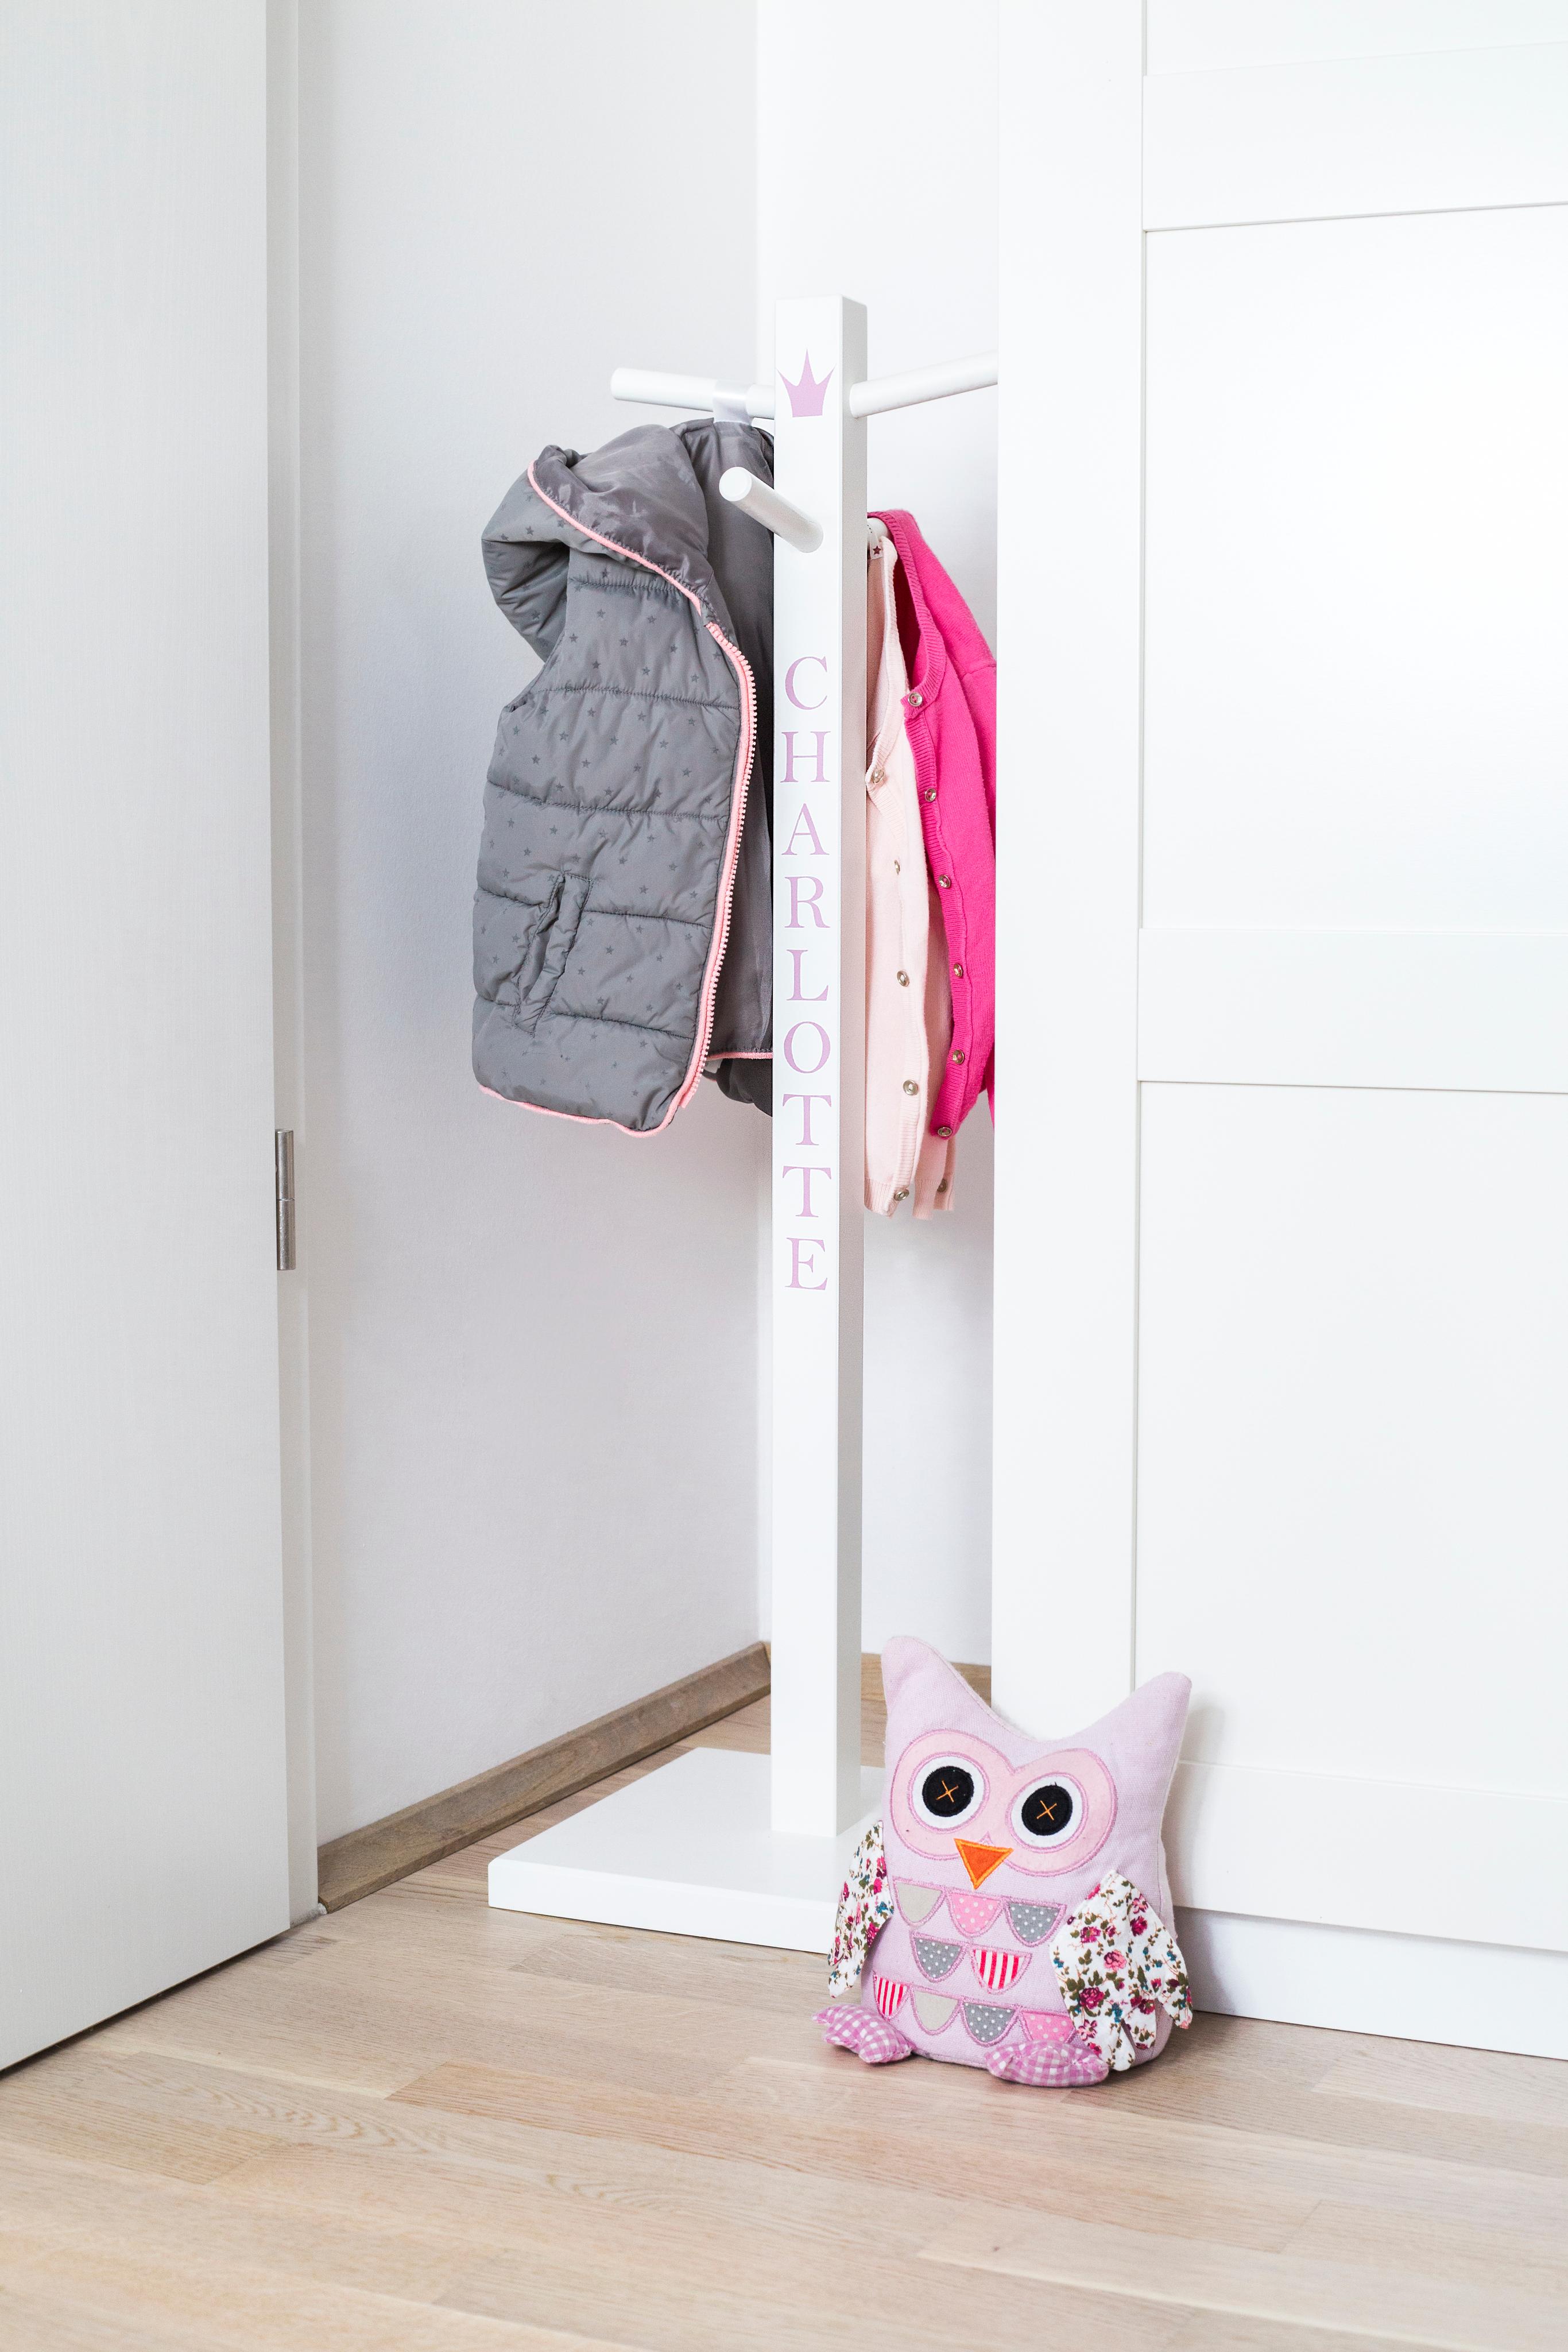 Ratz Fatz Platz!
Ein personalisierter Kinderkleiderständer eignet sich perfekt zur Ablage von Kita-Rucksack und Co!